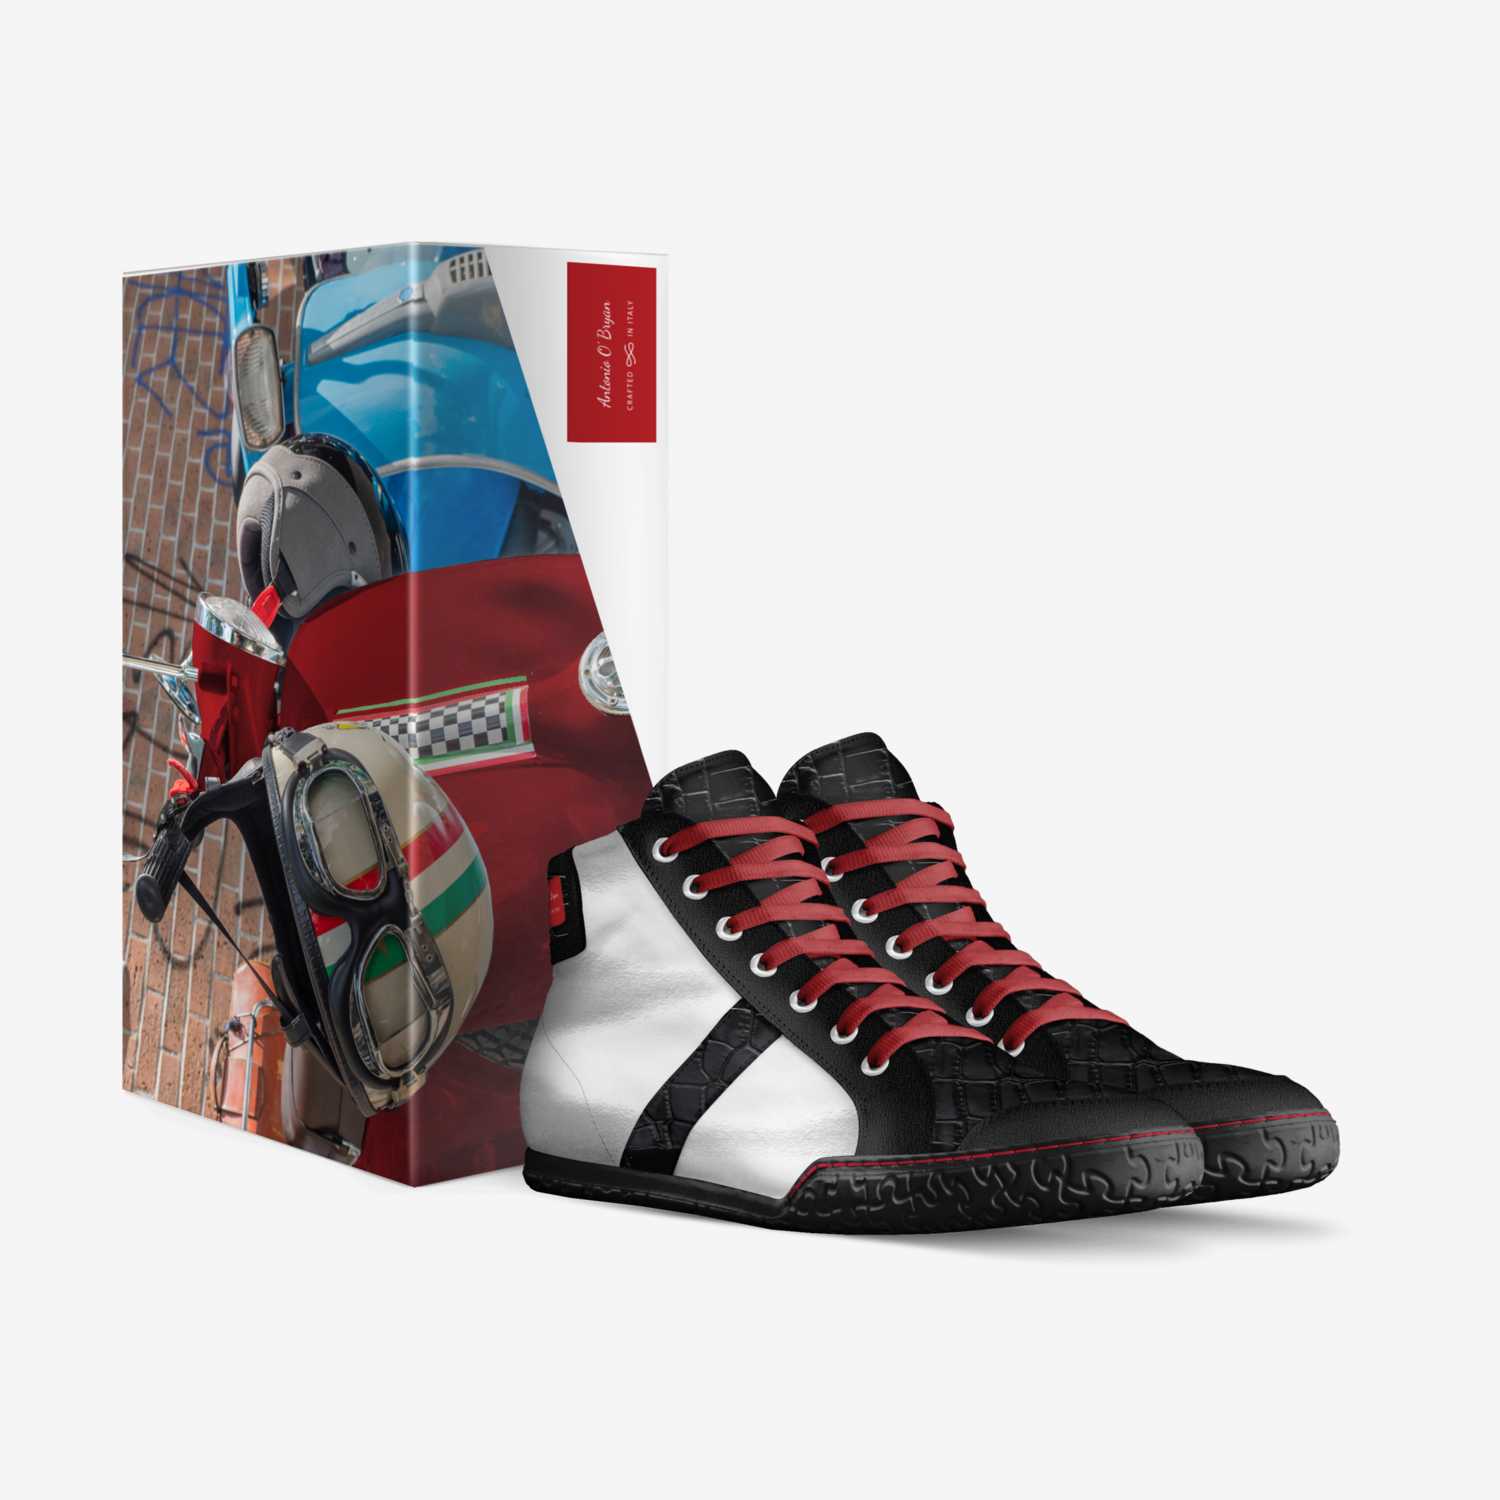 Antonio O' Bryan custom made in Italy shoes by Antonio Hubert | Box view